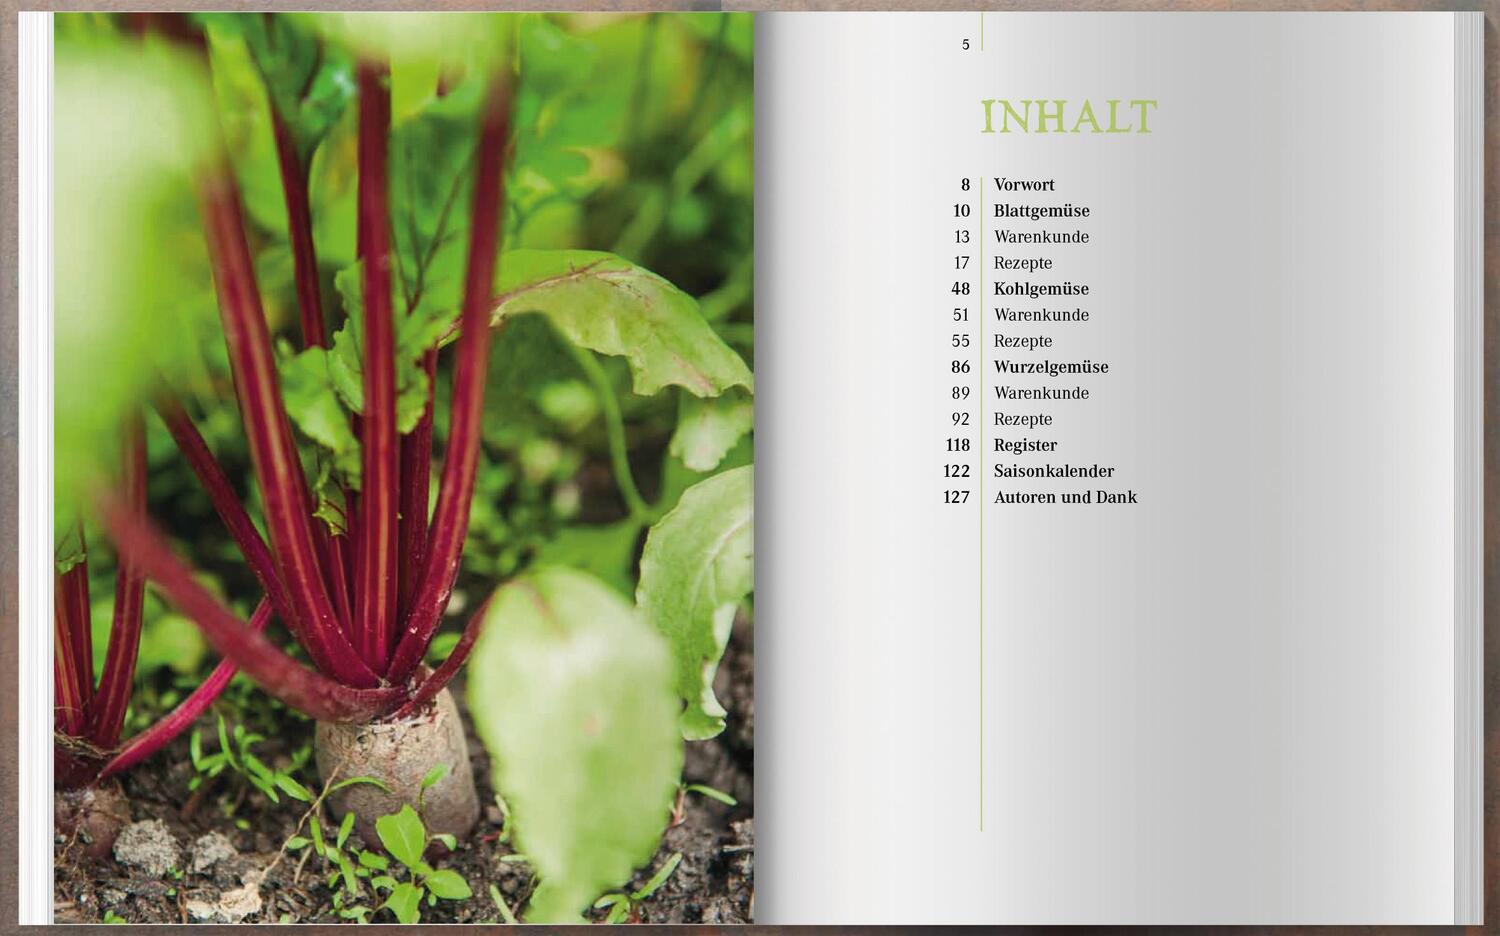 Bild: 9783784356976 | Neue Ideen für alte Gemüse | Christiane Leesker | Buch | Deutsch